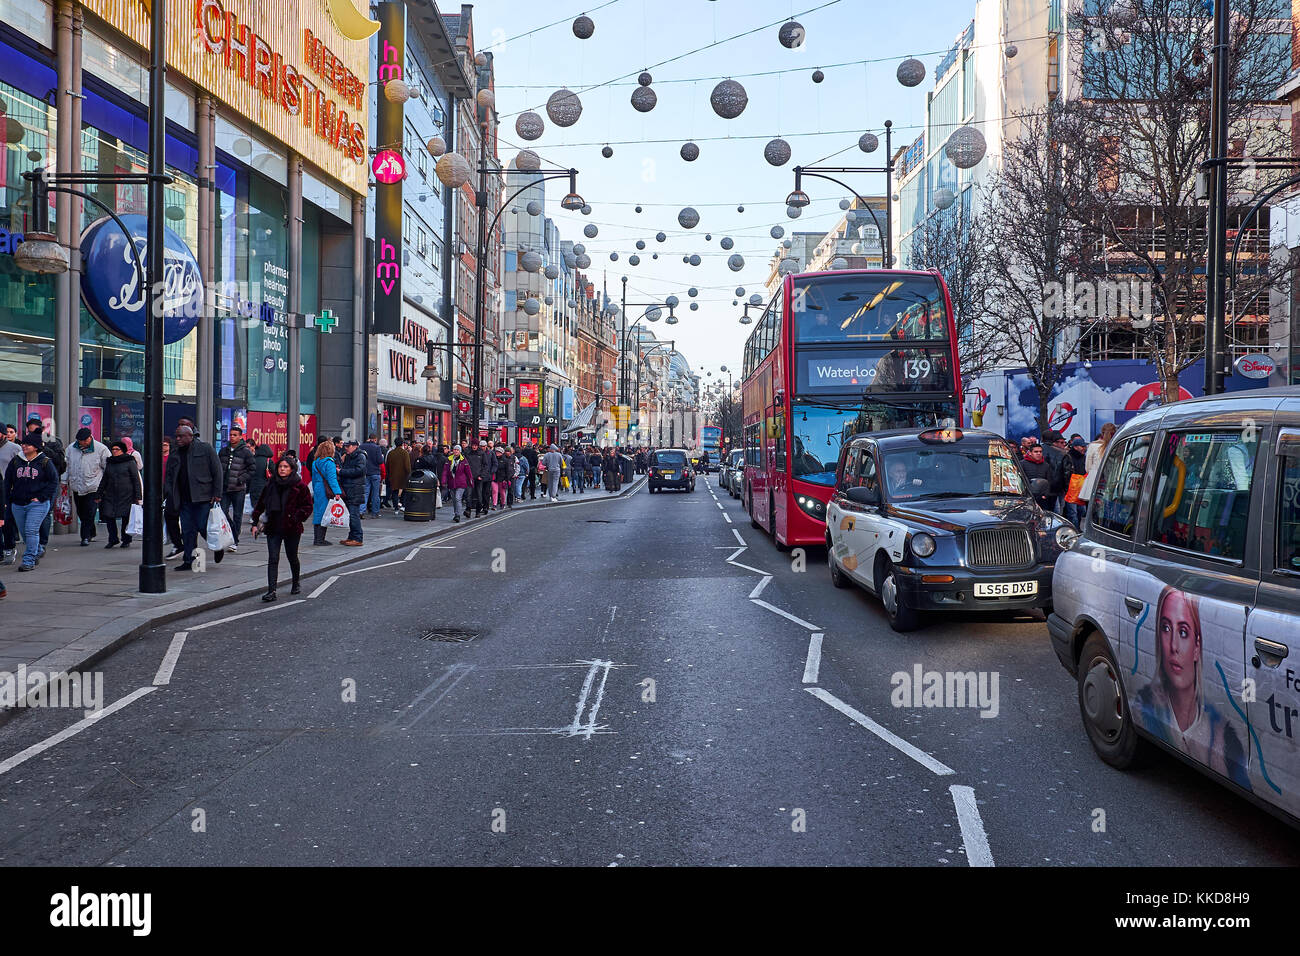 London city - 24 décembre 2016 : double decker bus roulant au milieu d'Oxford street, avec beaucoup de décorations de Noël Banque D'Images